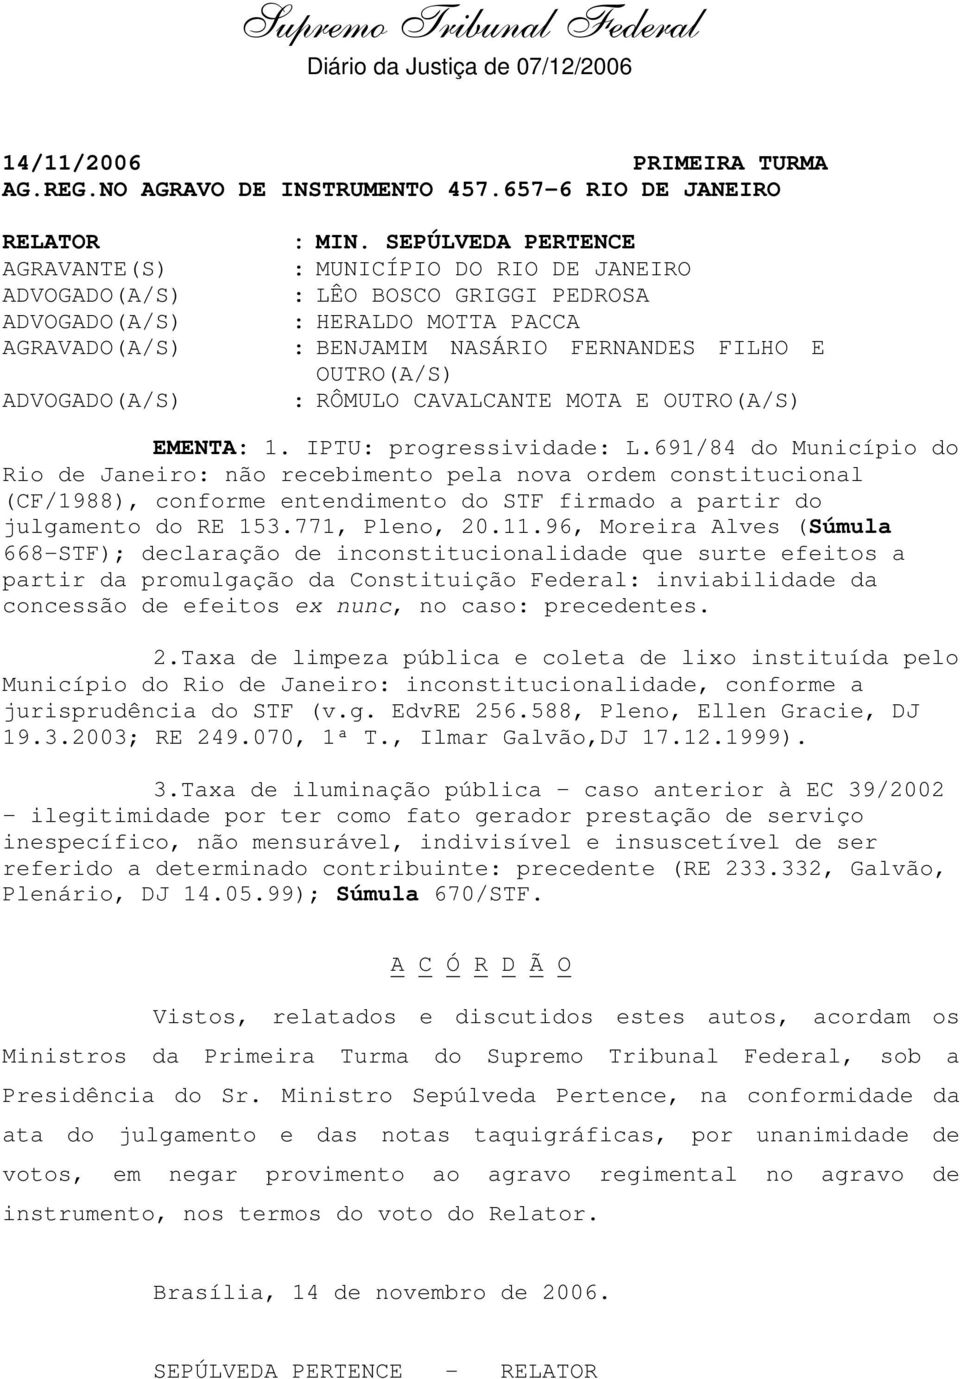 IPTU: progressividade: L.691/84 do Município do Rio de Janeiro: não recebimento pela nova ordem constitucional (CF/1988), conforme entendimento do STF firmado a partir do julgamento do RE 153.